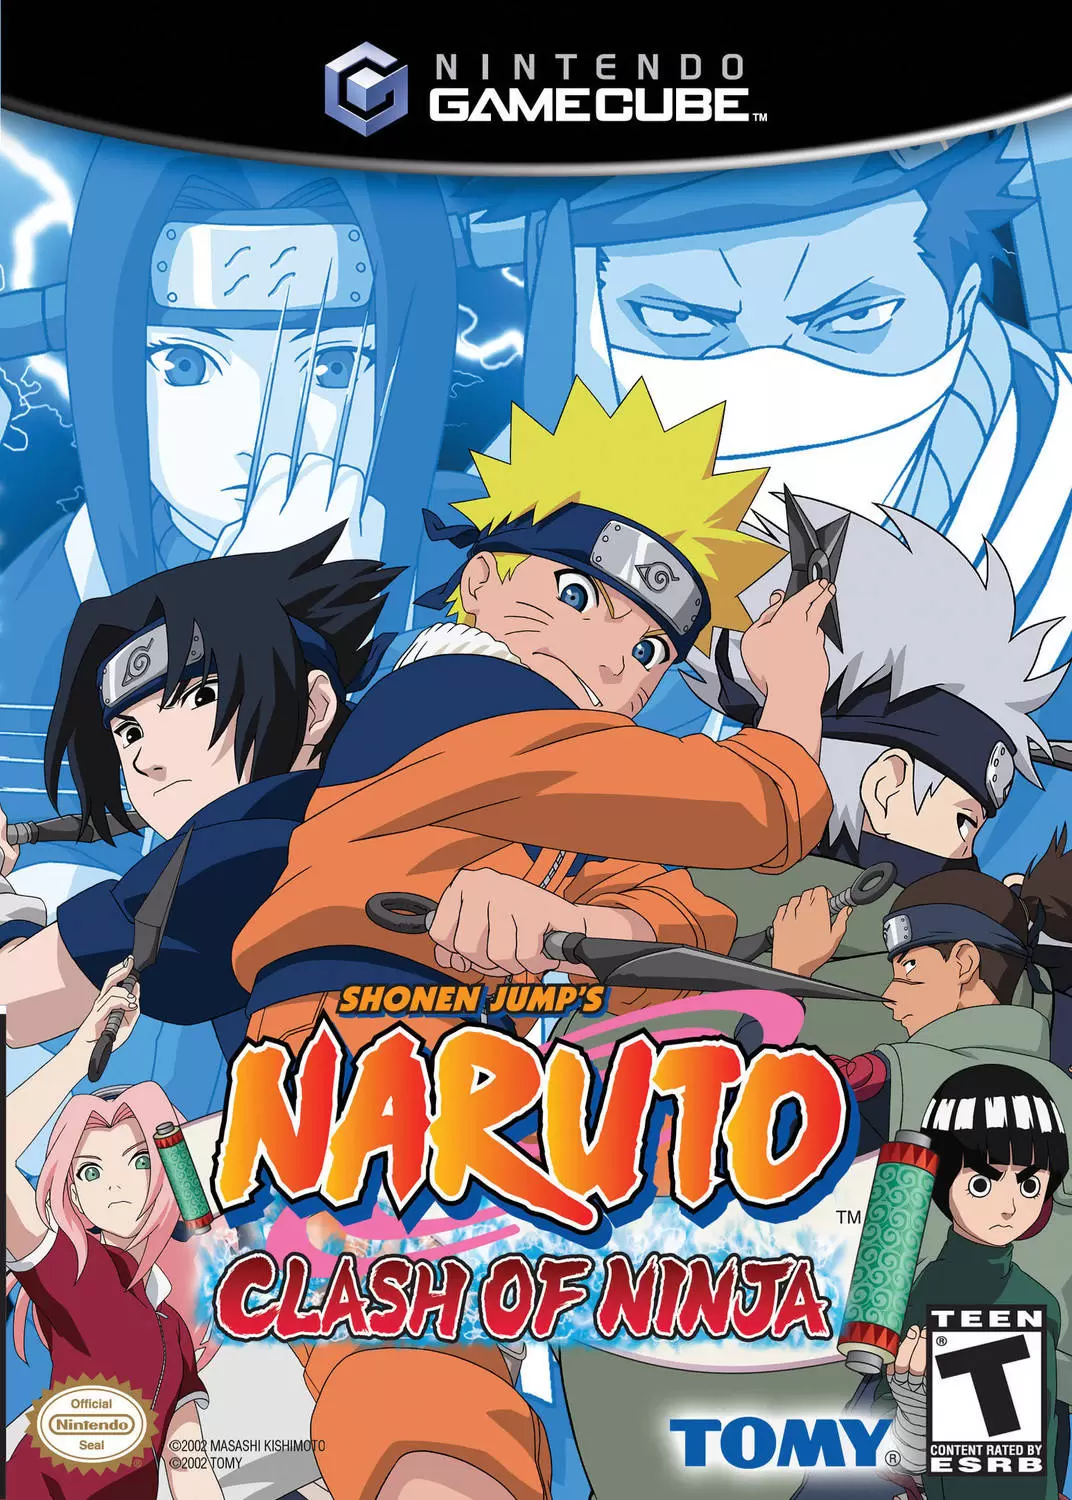 Nintendo Gamecube Games - Naruto: Clash of Ninja